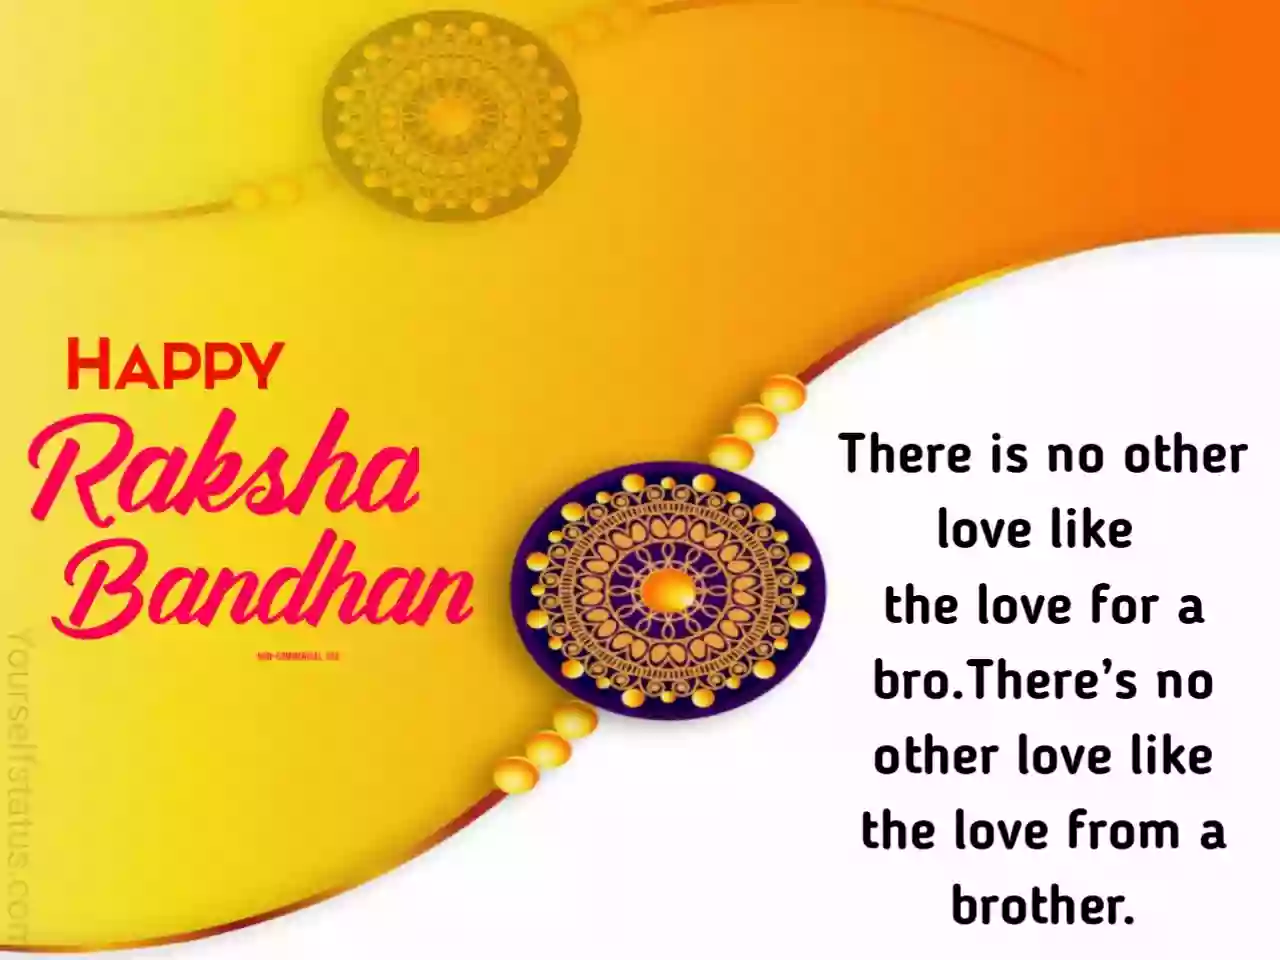 Raksha bandhan images in english